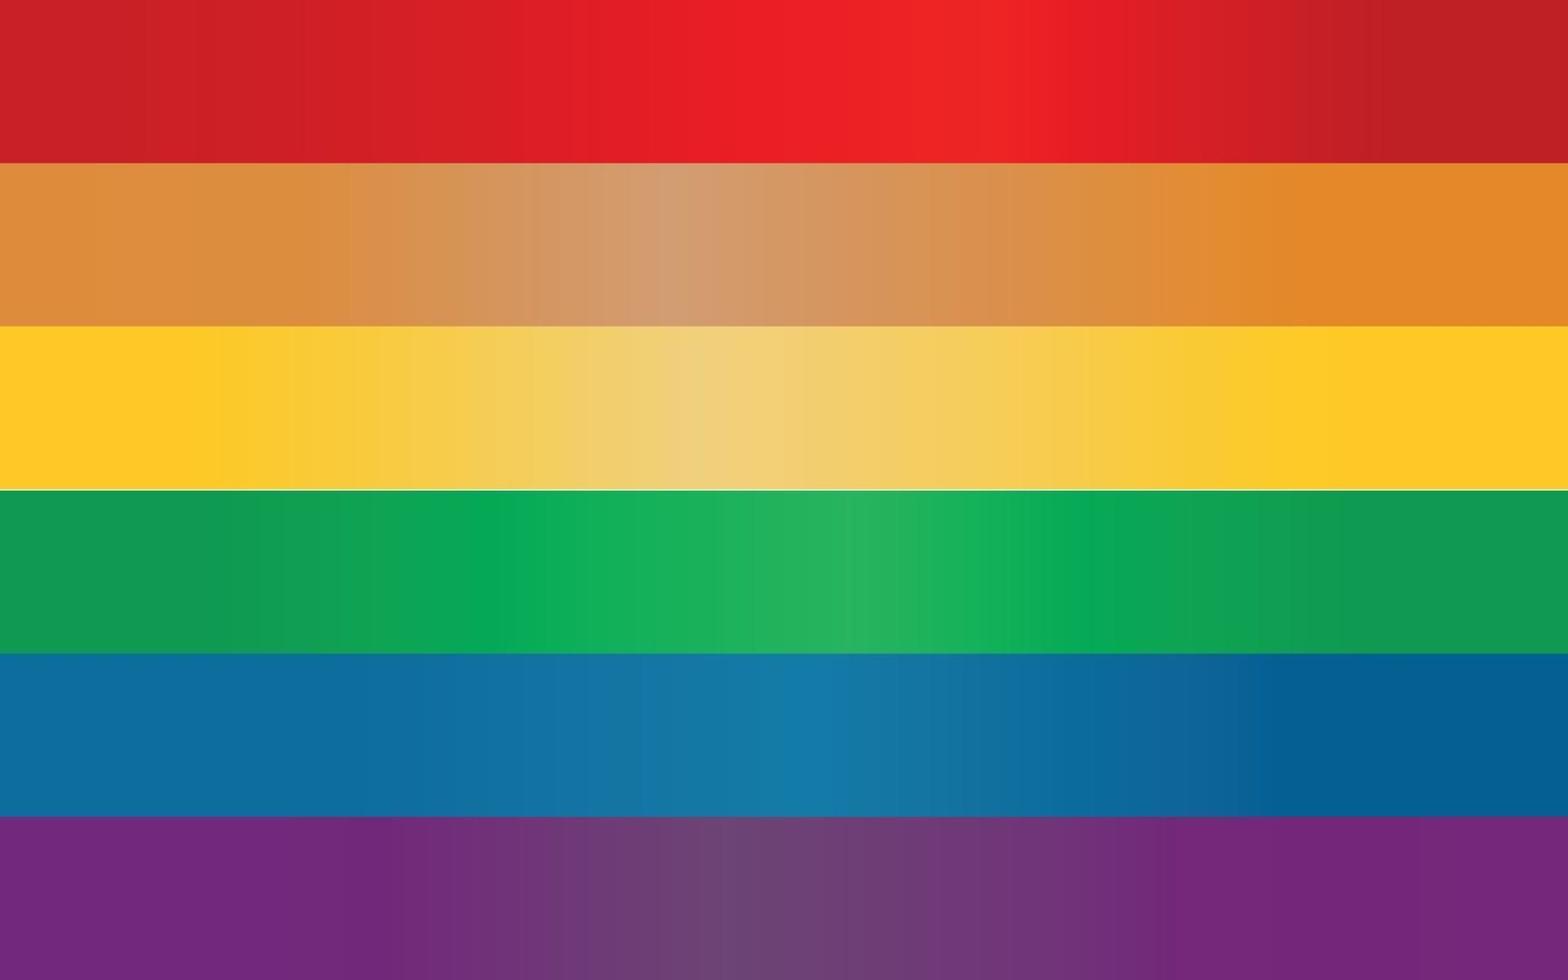 nuovo colore sfumato della bandiera arcobaleno dell'orgoglio dei diritti lgbtq vettore